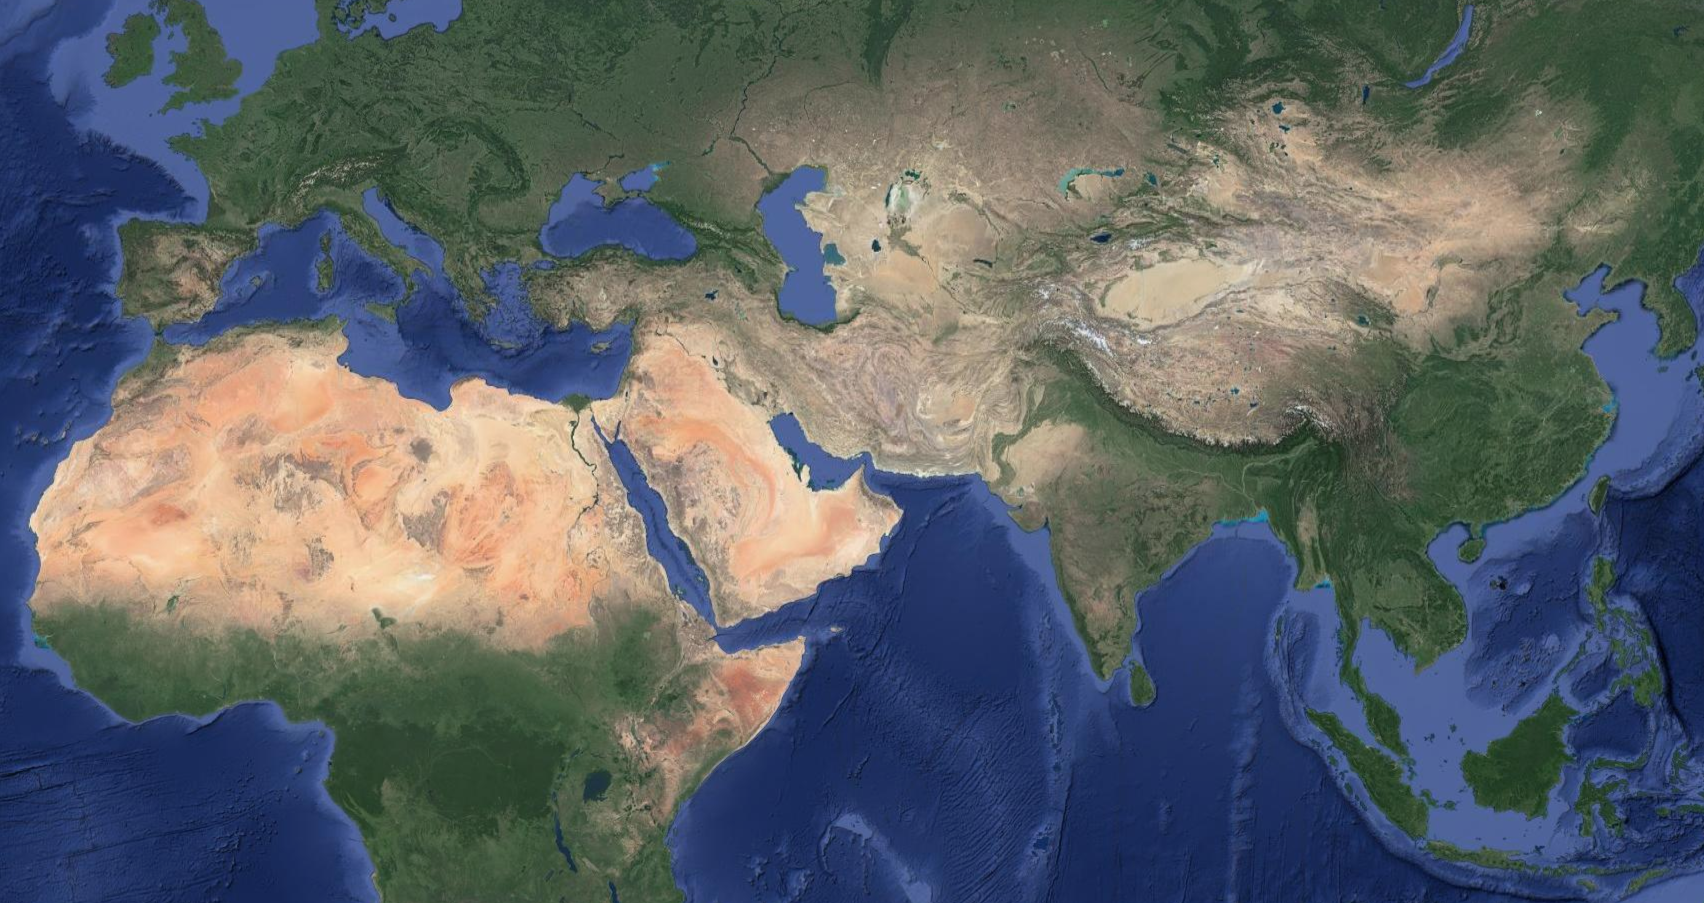 Страна доха где находится. Государство Катар на карте.